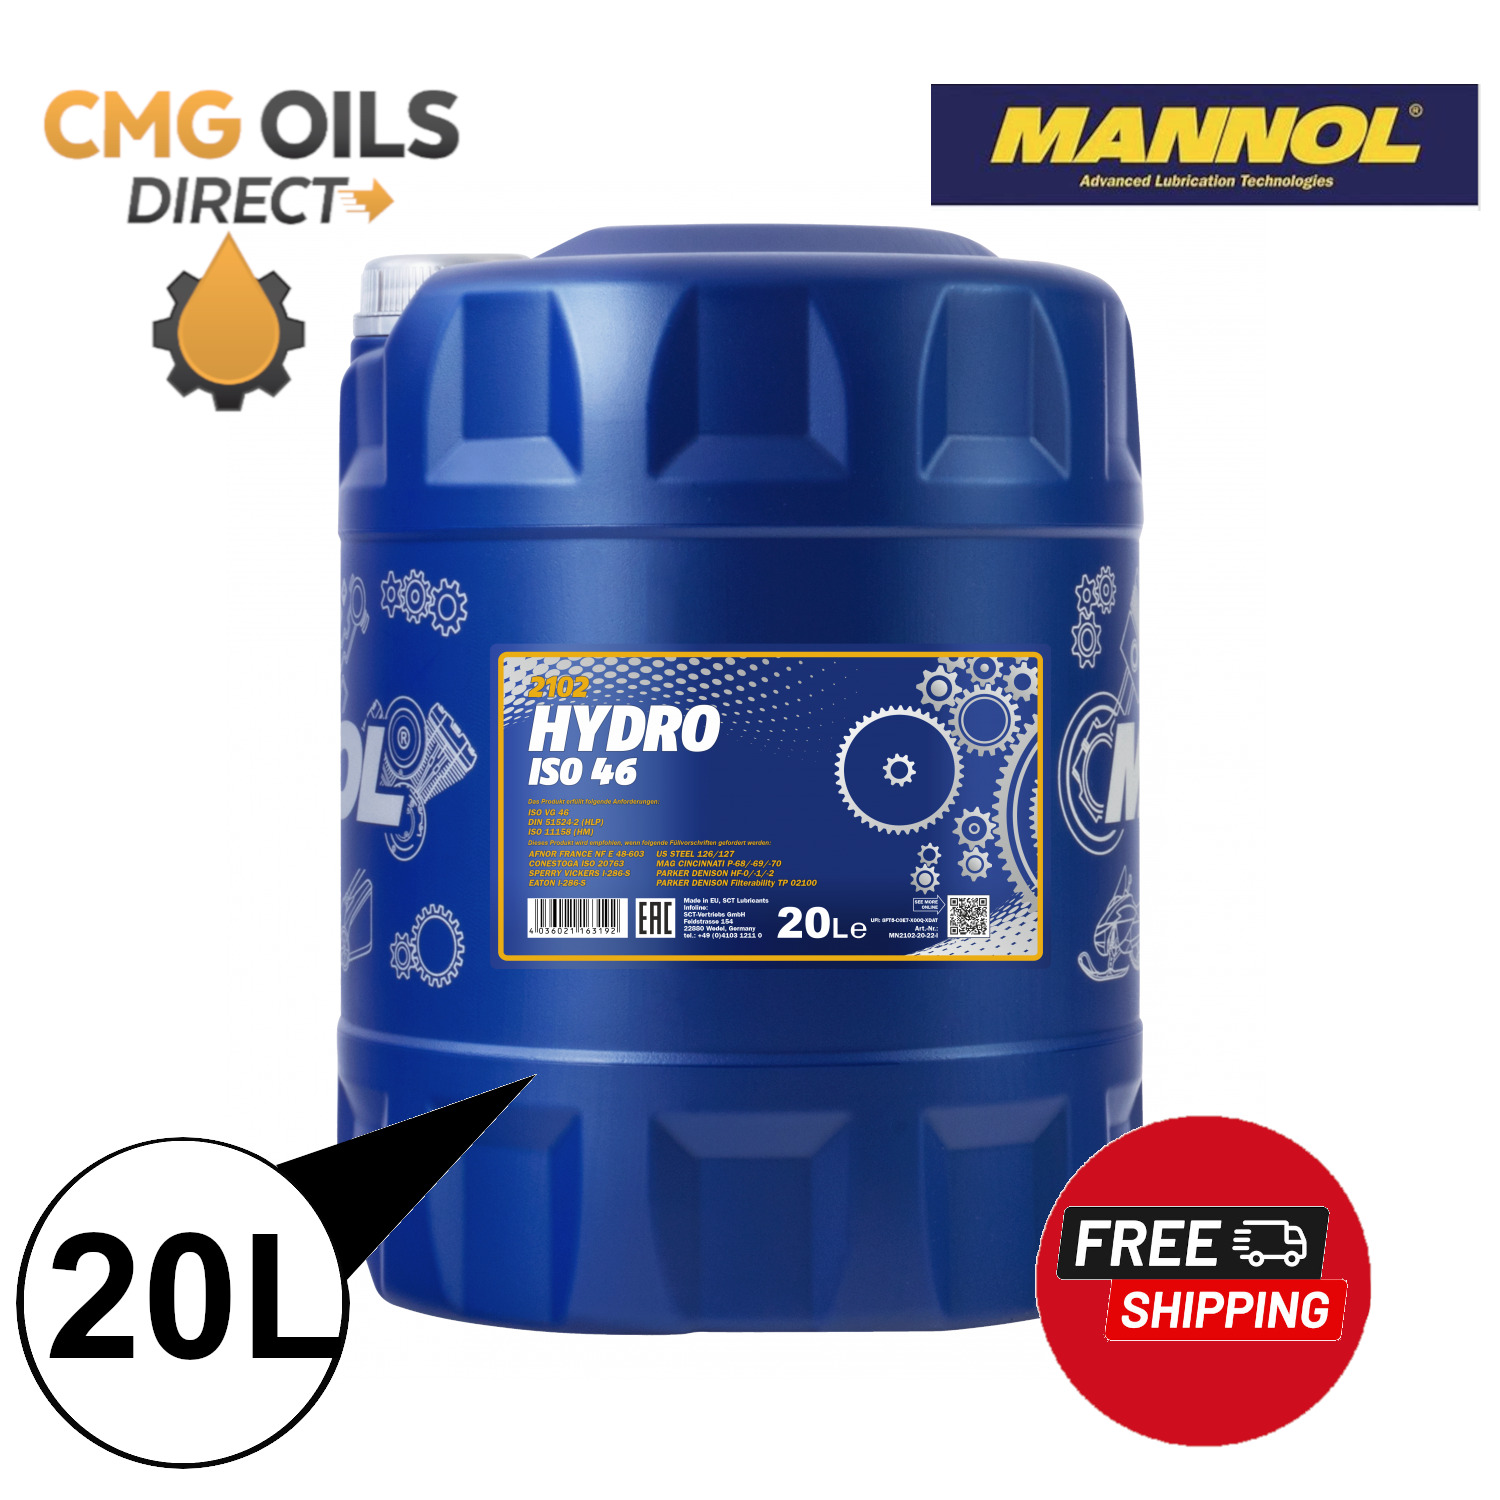 MANNOL HYDRO ISO 46 HLP 46 High Grade  HYDRAULIC FLUID 20L